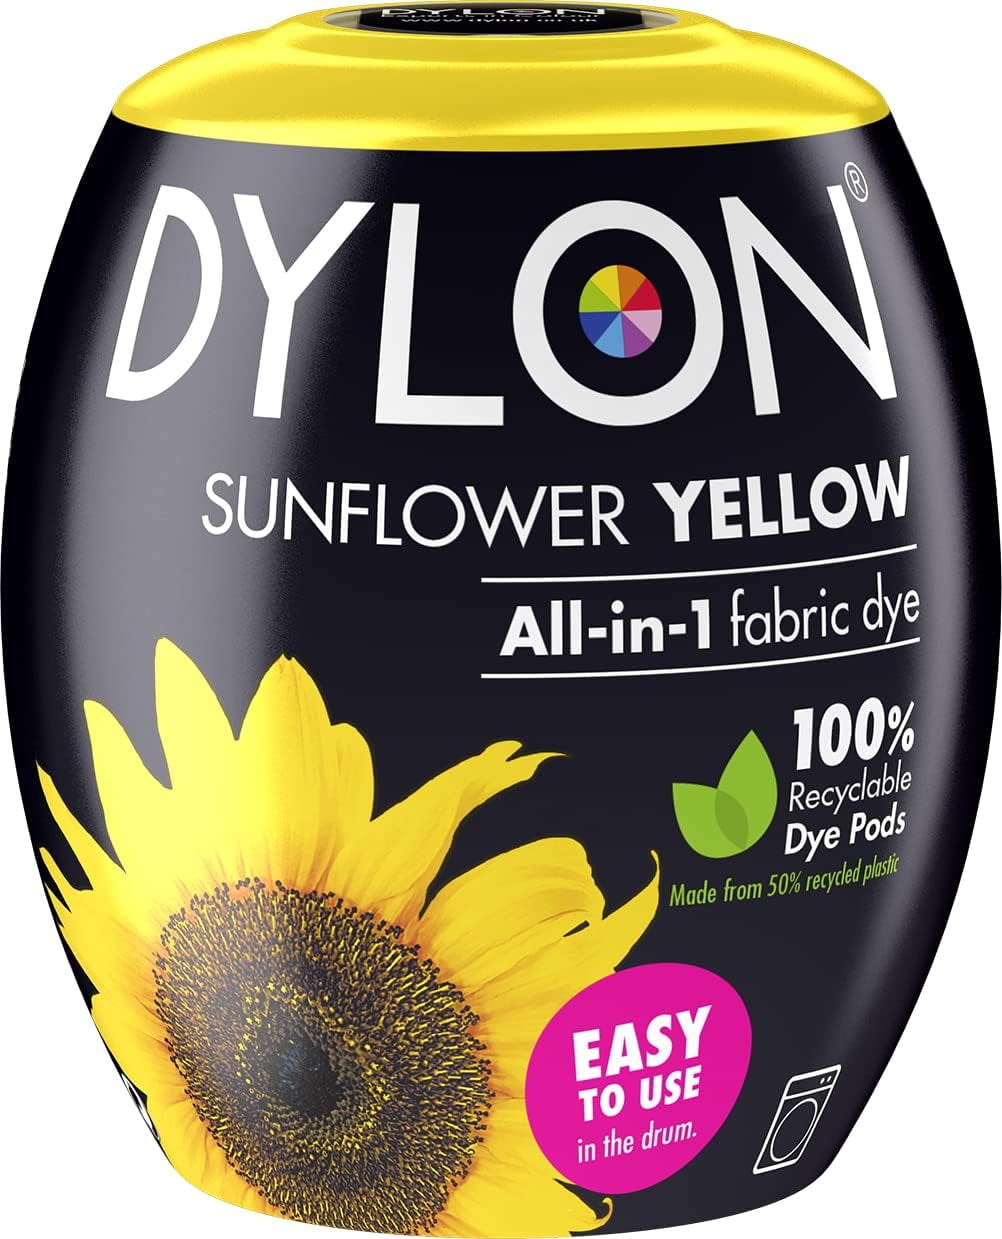 Dylon Dye Pod Velvet Black 350G - Tesco Groceries